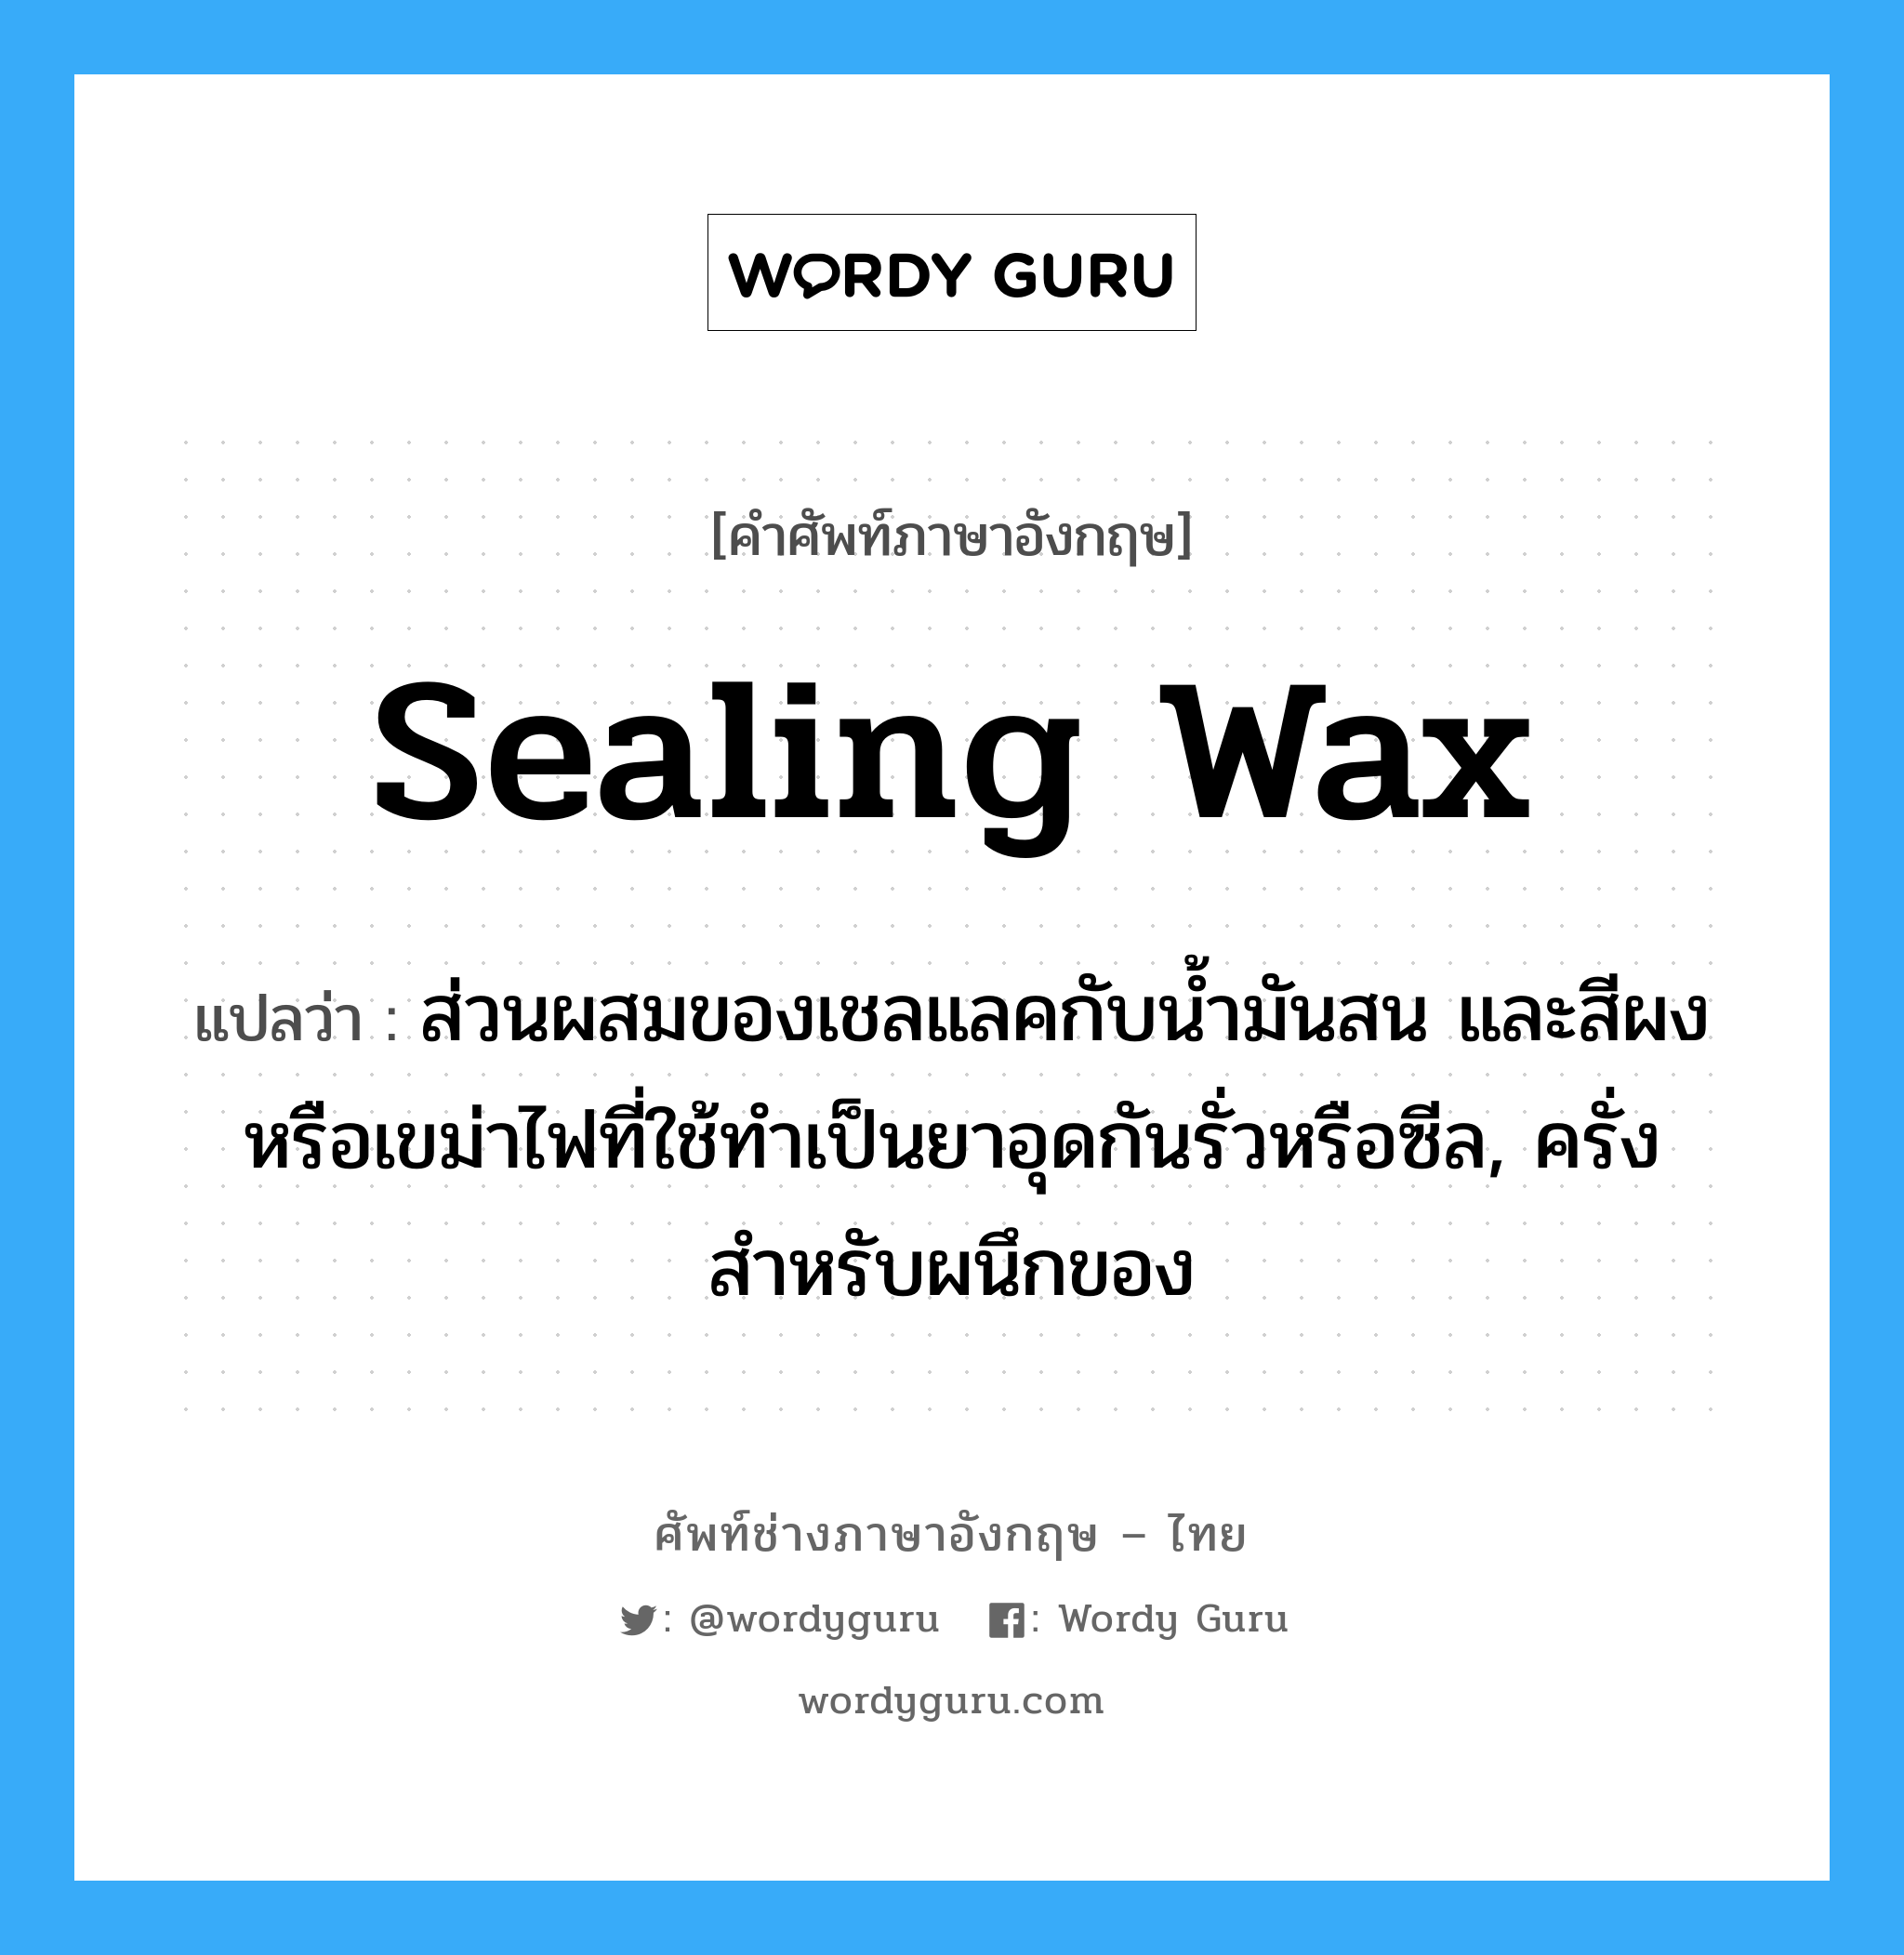 sealing wax แปลว่า?, คำศัพท์ช่างภาษาอังกฤษ - ไทย sealing wax คำศัพท์ภาษาอังกฤษ sealing wax แปลว่า ส่วนผสมของเชลแลคกับน้ำมันสน และสีผงหรือเขม่าไฟที่ใช้ทำเป็นยาอุดกันรั่วหรือซีล, ครั่งสำหรับผนึกของ